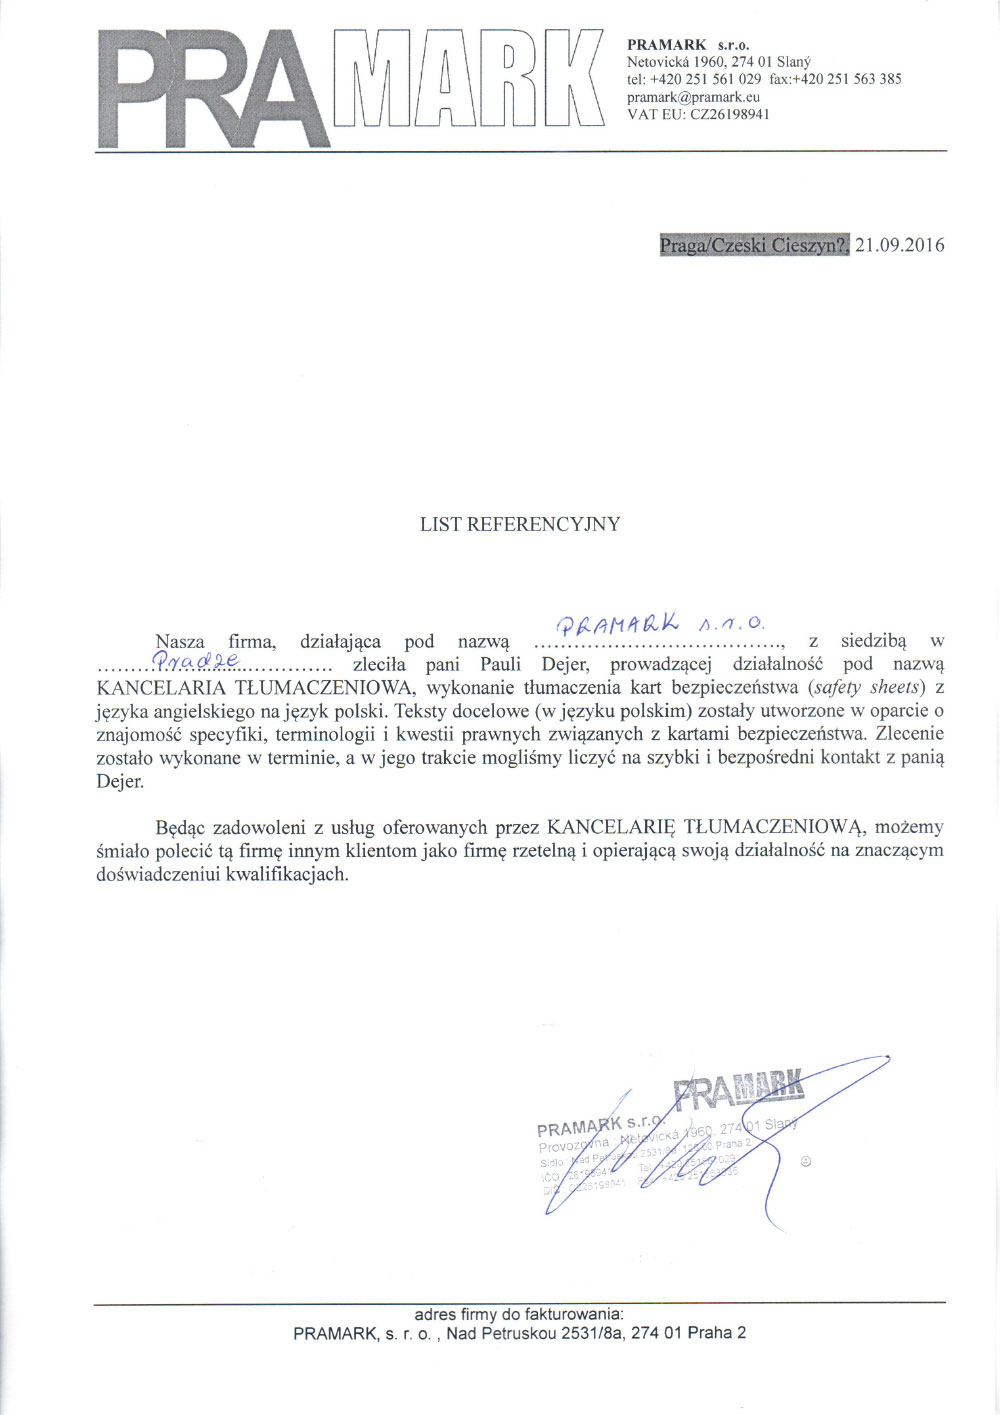 Certyfikat Pramark - Kancelaria Tłumaczeniowa Paula Dejer